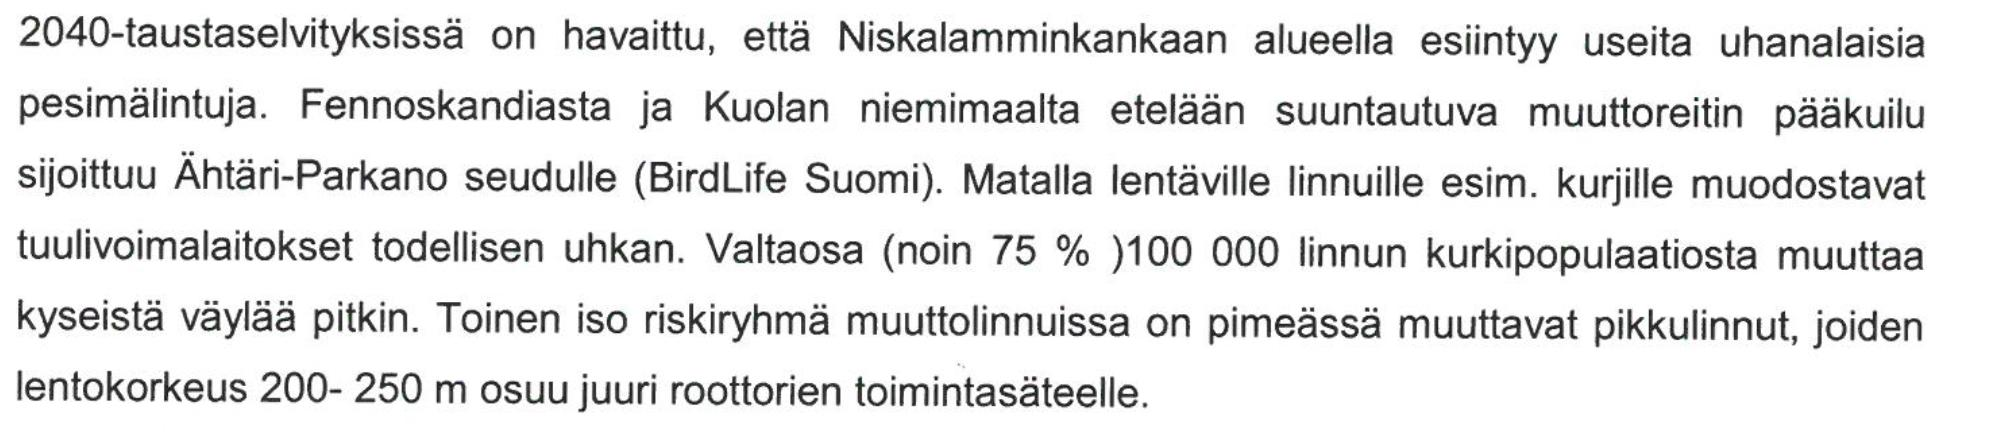 Kihniö, kaavoitus, 21.12.2015 Pirkanmaan maakuntamuseo. Hankkeen esiselvityksen (WSP Finland Oy 2.6.